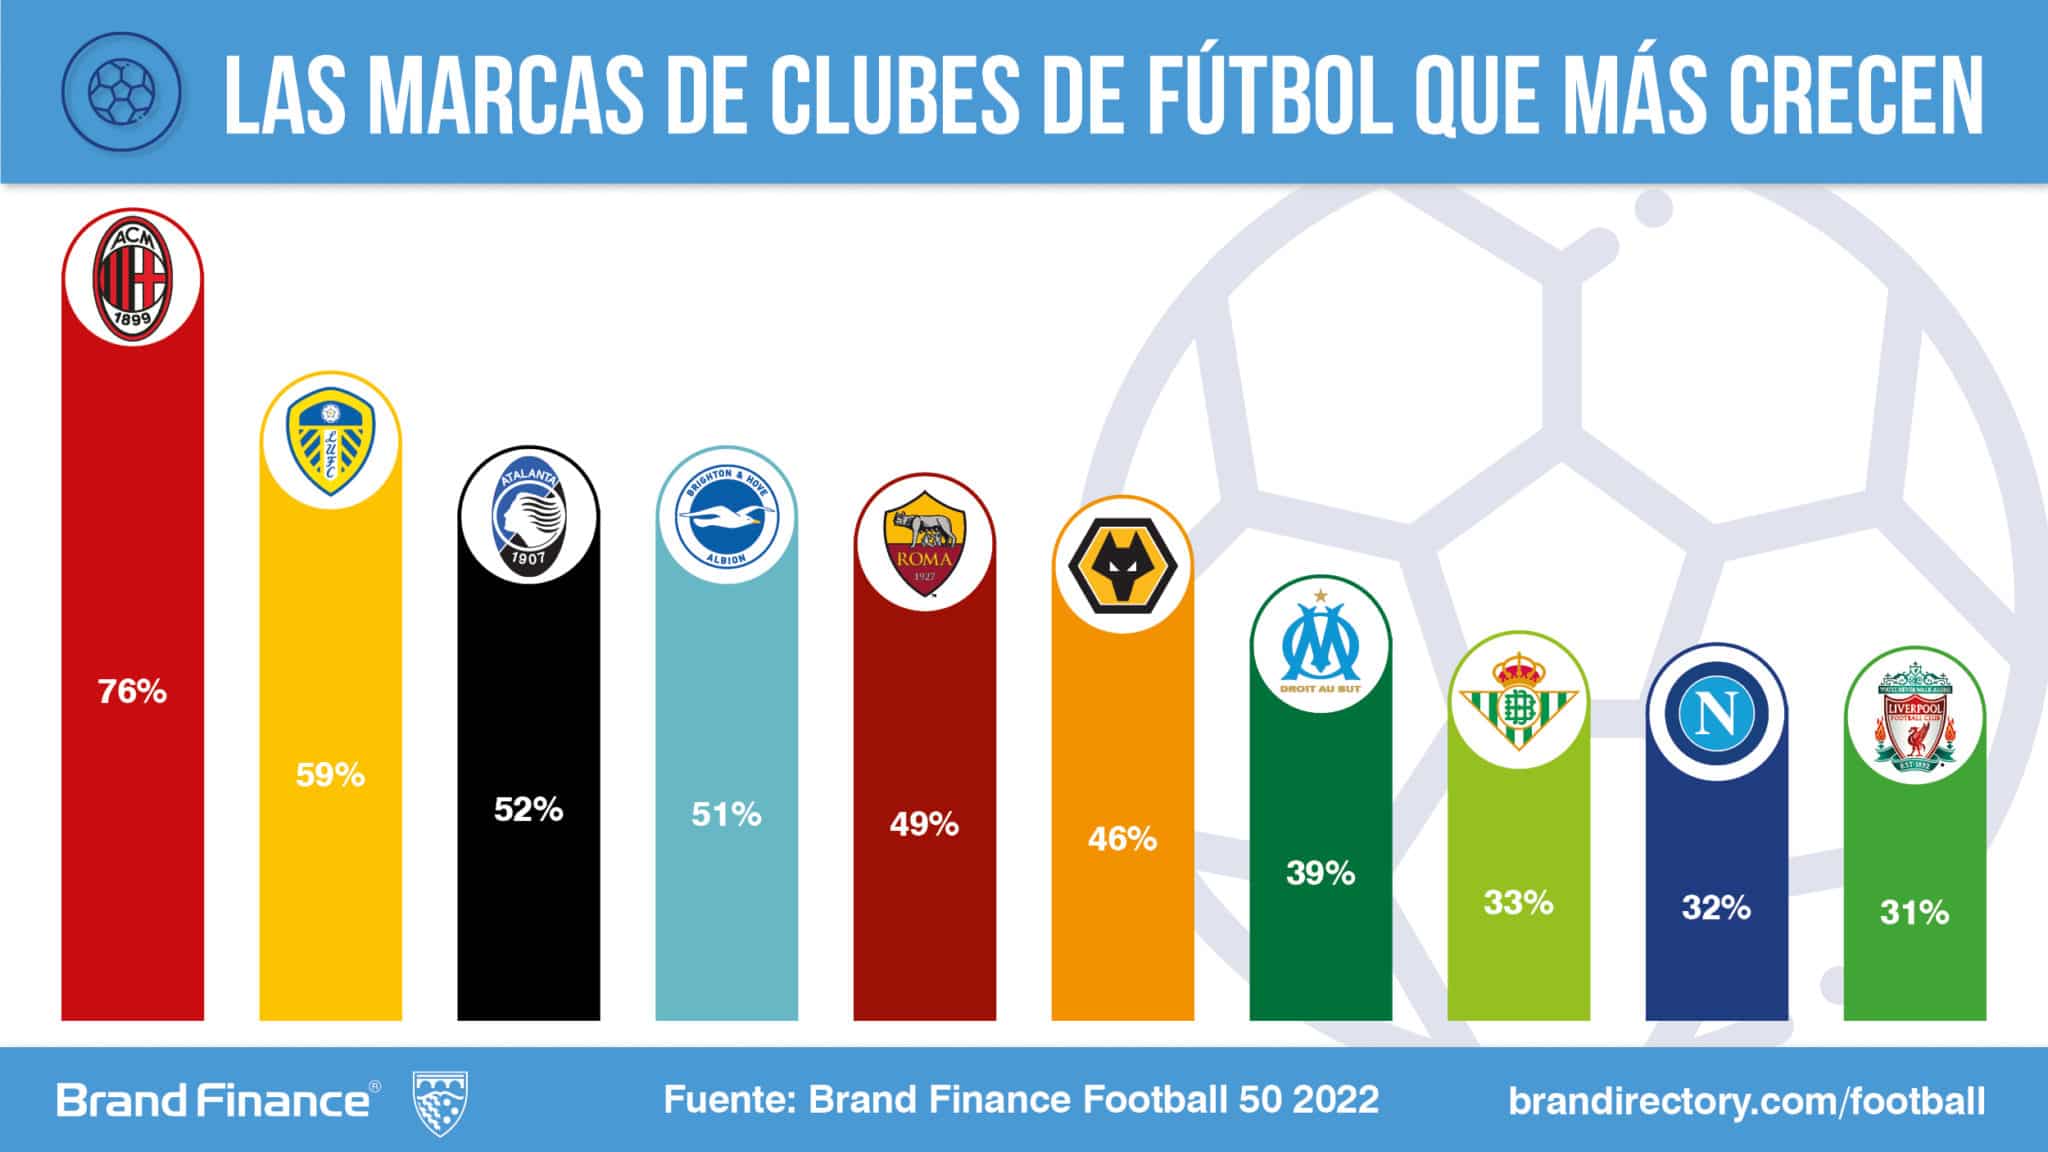 Las marcas de clubes de fútbol que más crecen